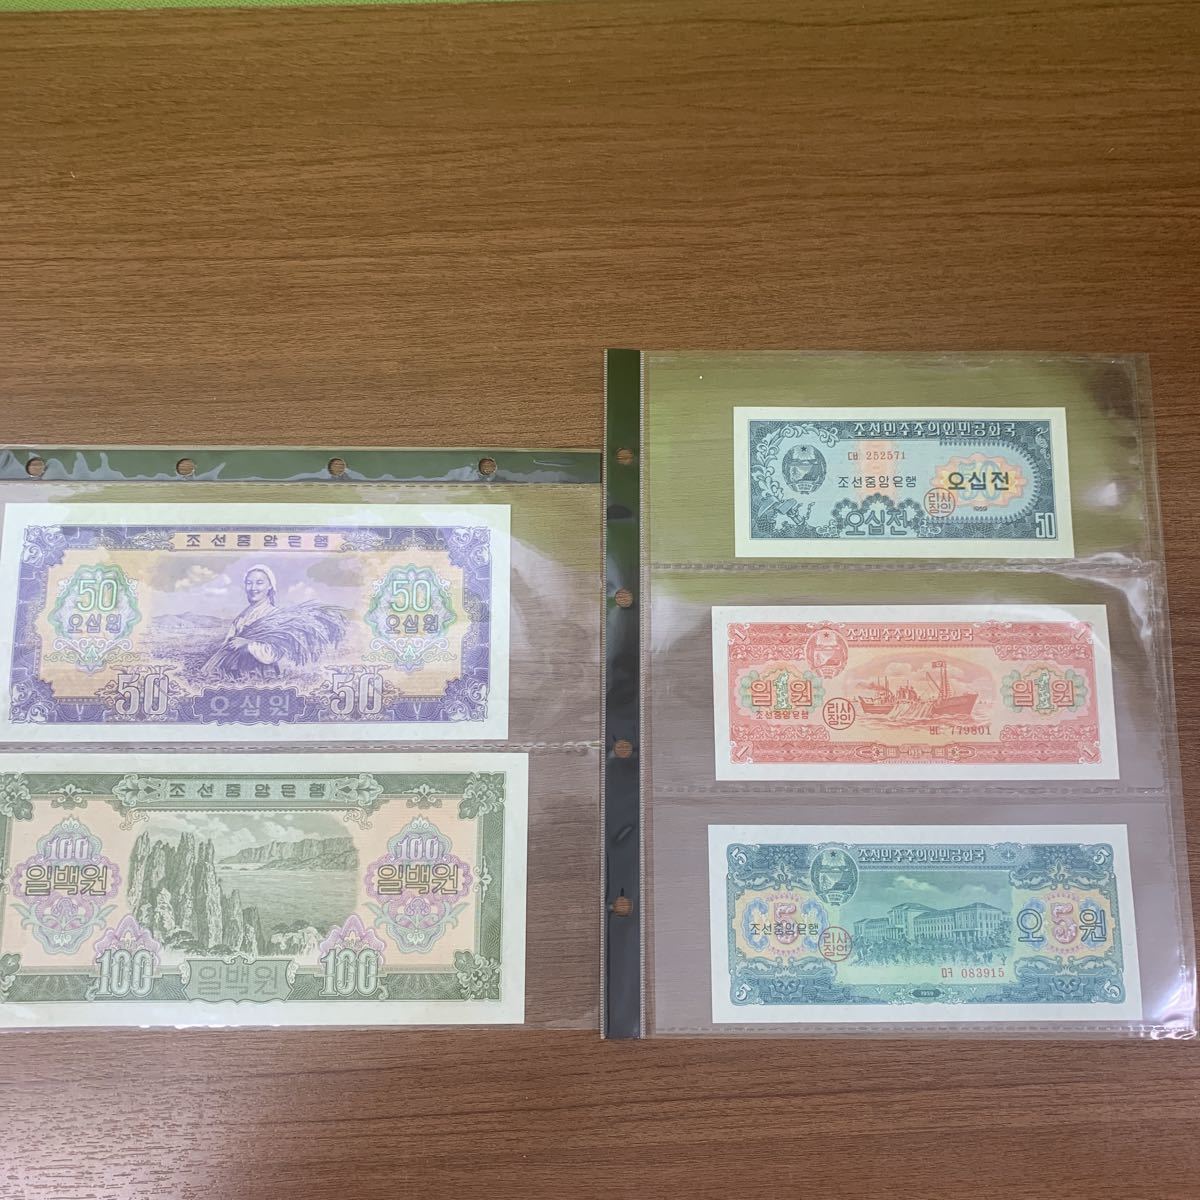 朝鮮中央銀行 旧紙幣 1.5.50.100 ウォン 朝鮮民主主義人民共和国 朝鮮 紙幣 貨幣 世界 アジア コレクター コレクション お札 北朝鮮 1959年